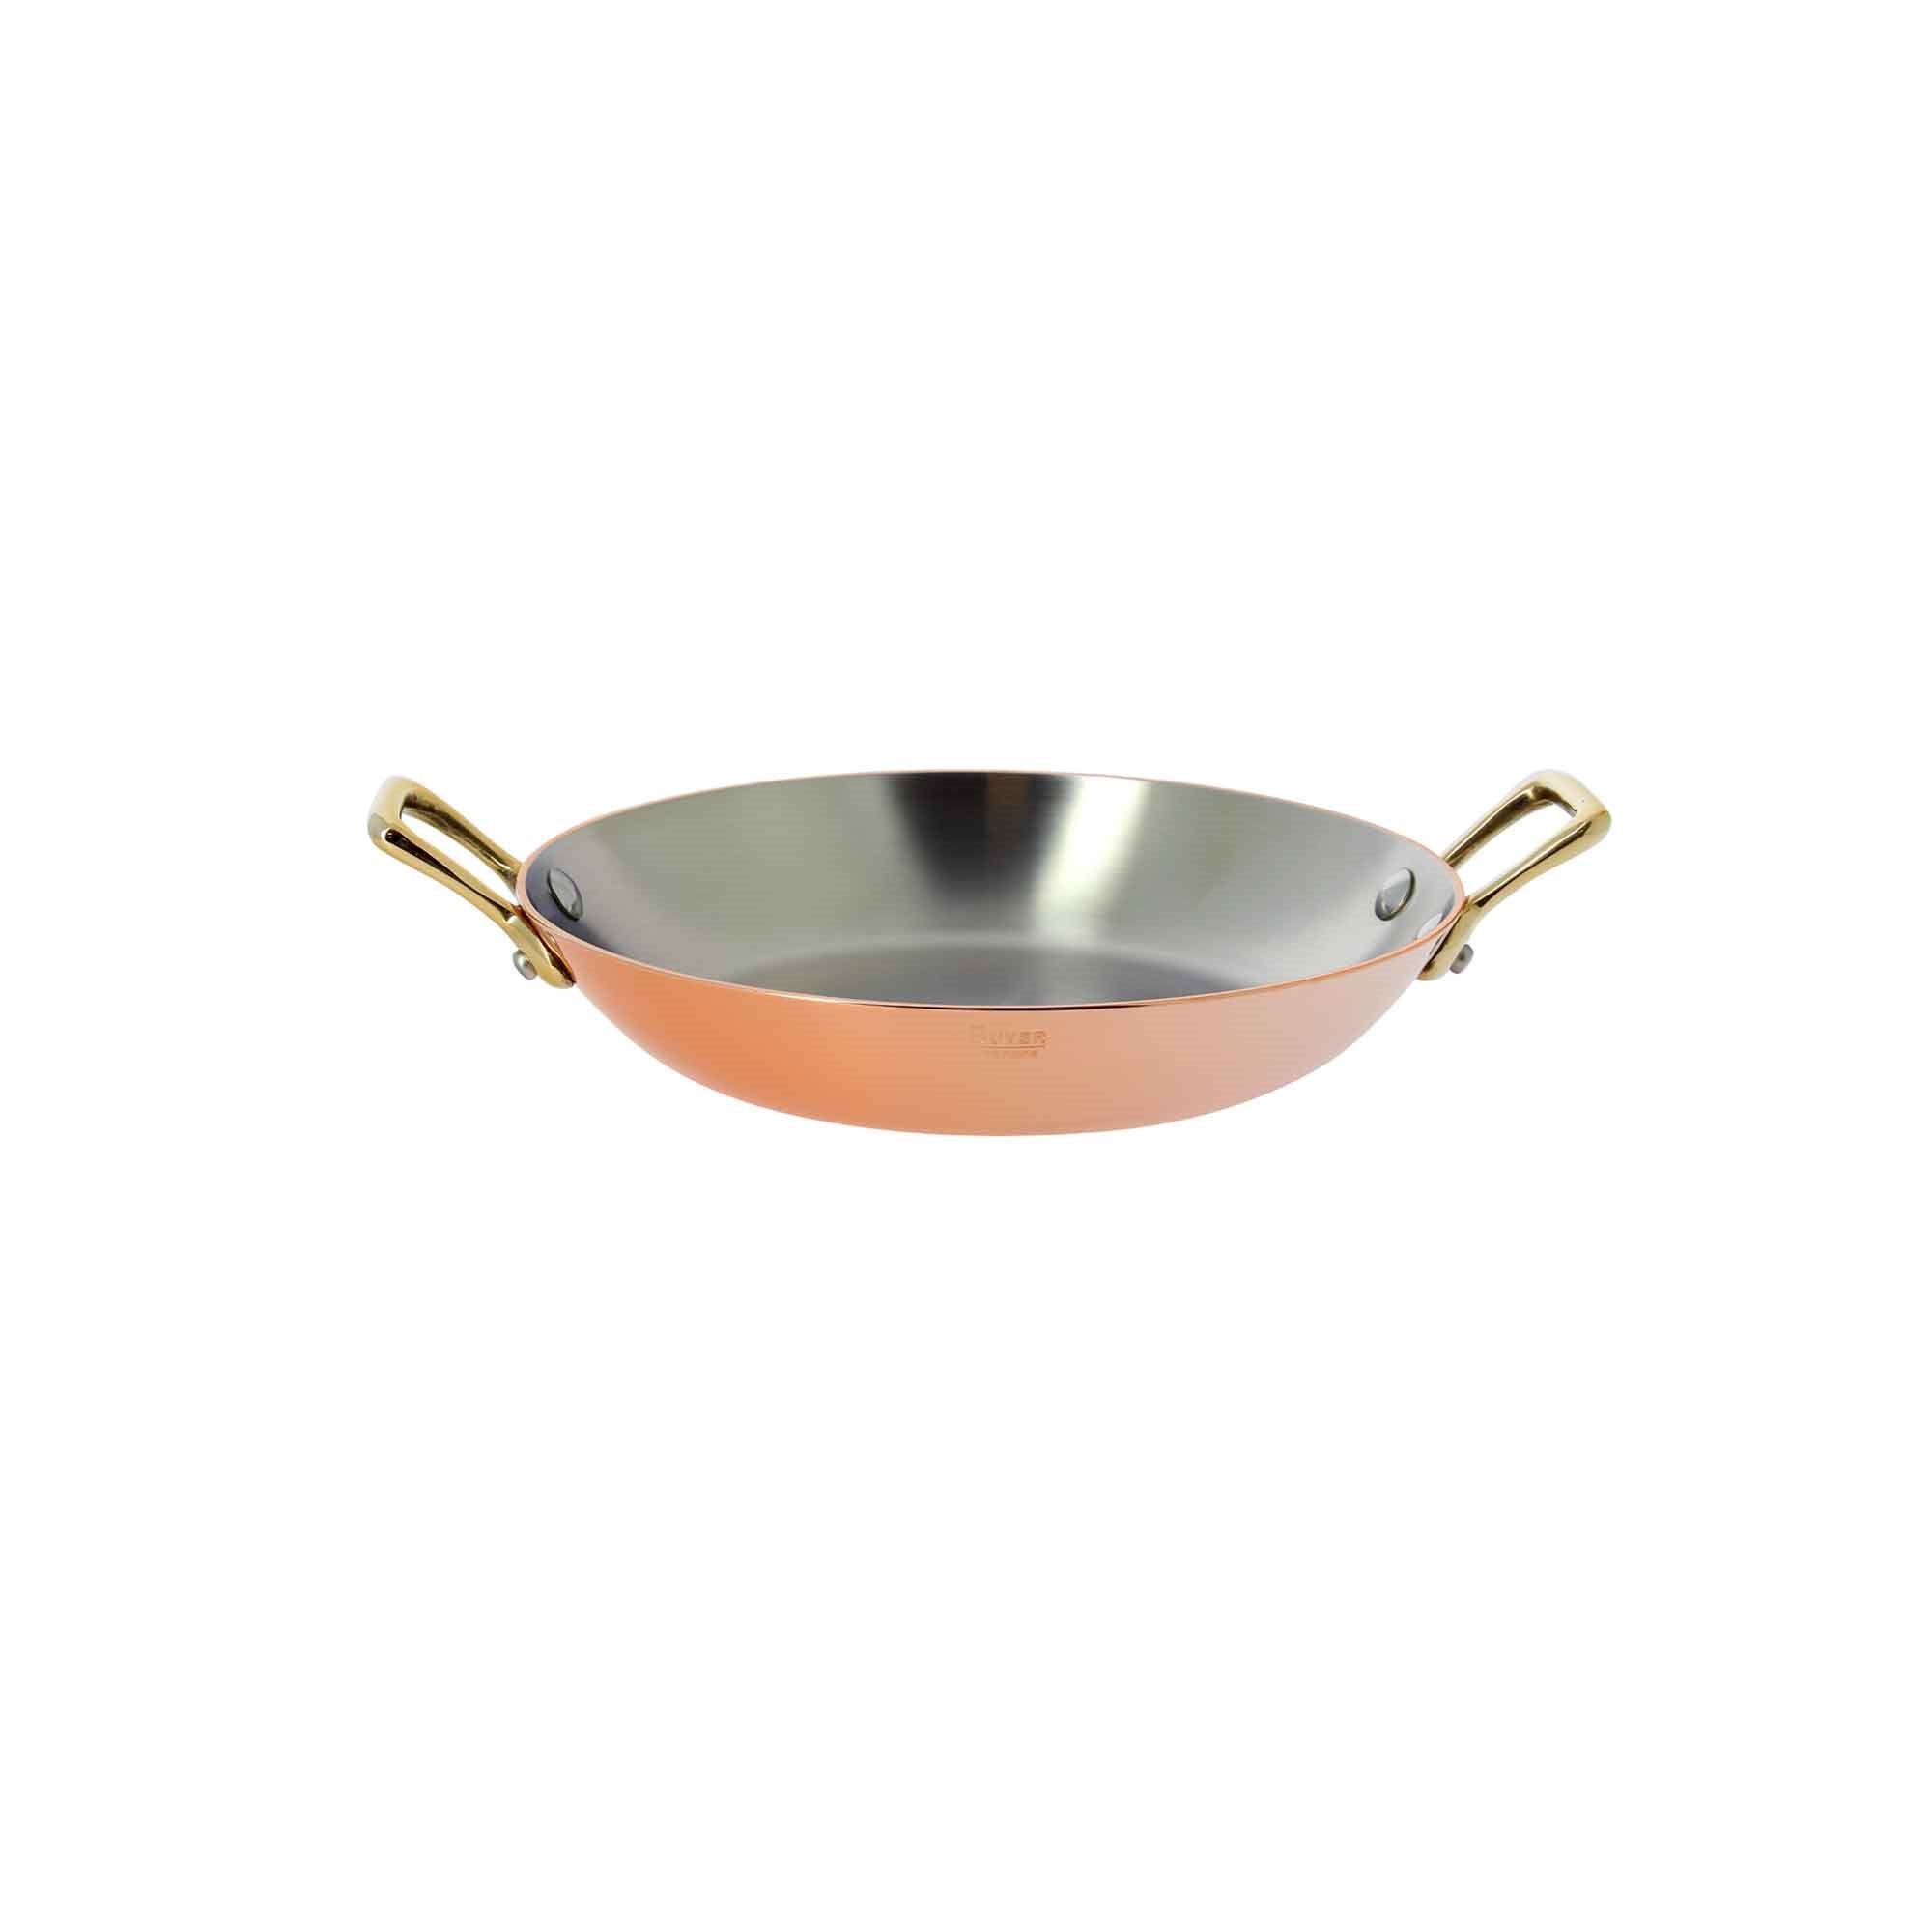 Inocuivre frying pan with 2 handles, 16 cm, brass - de Buyer